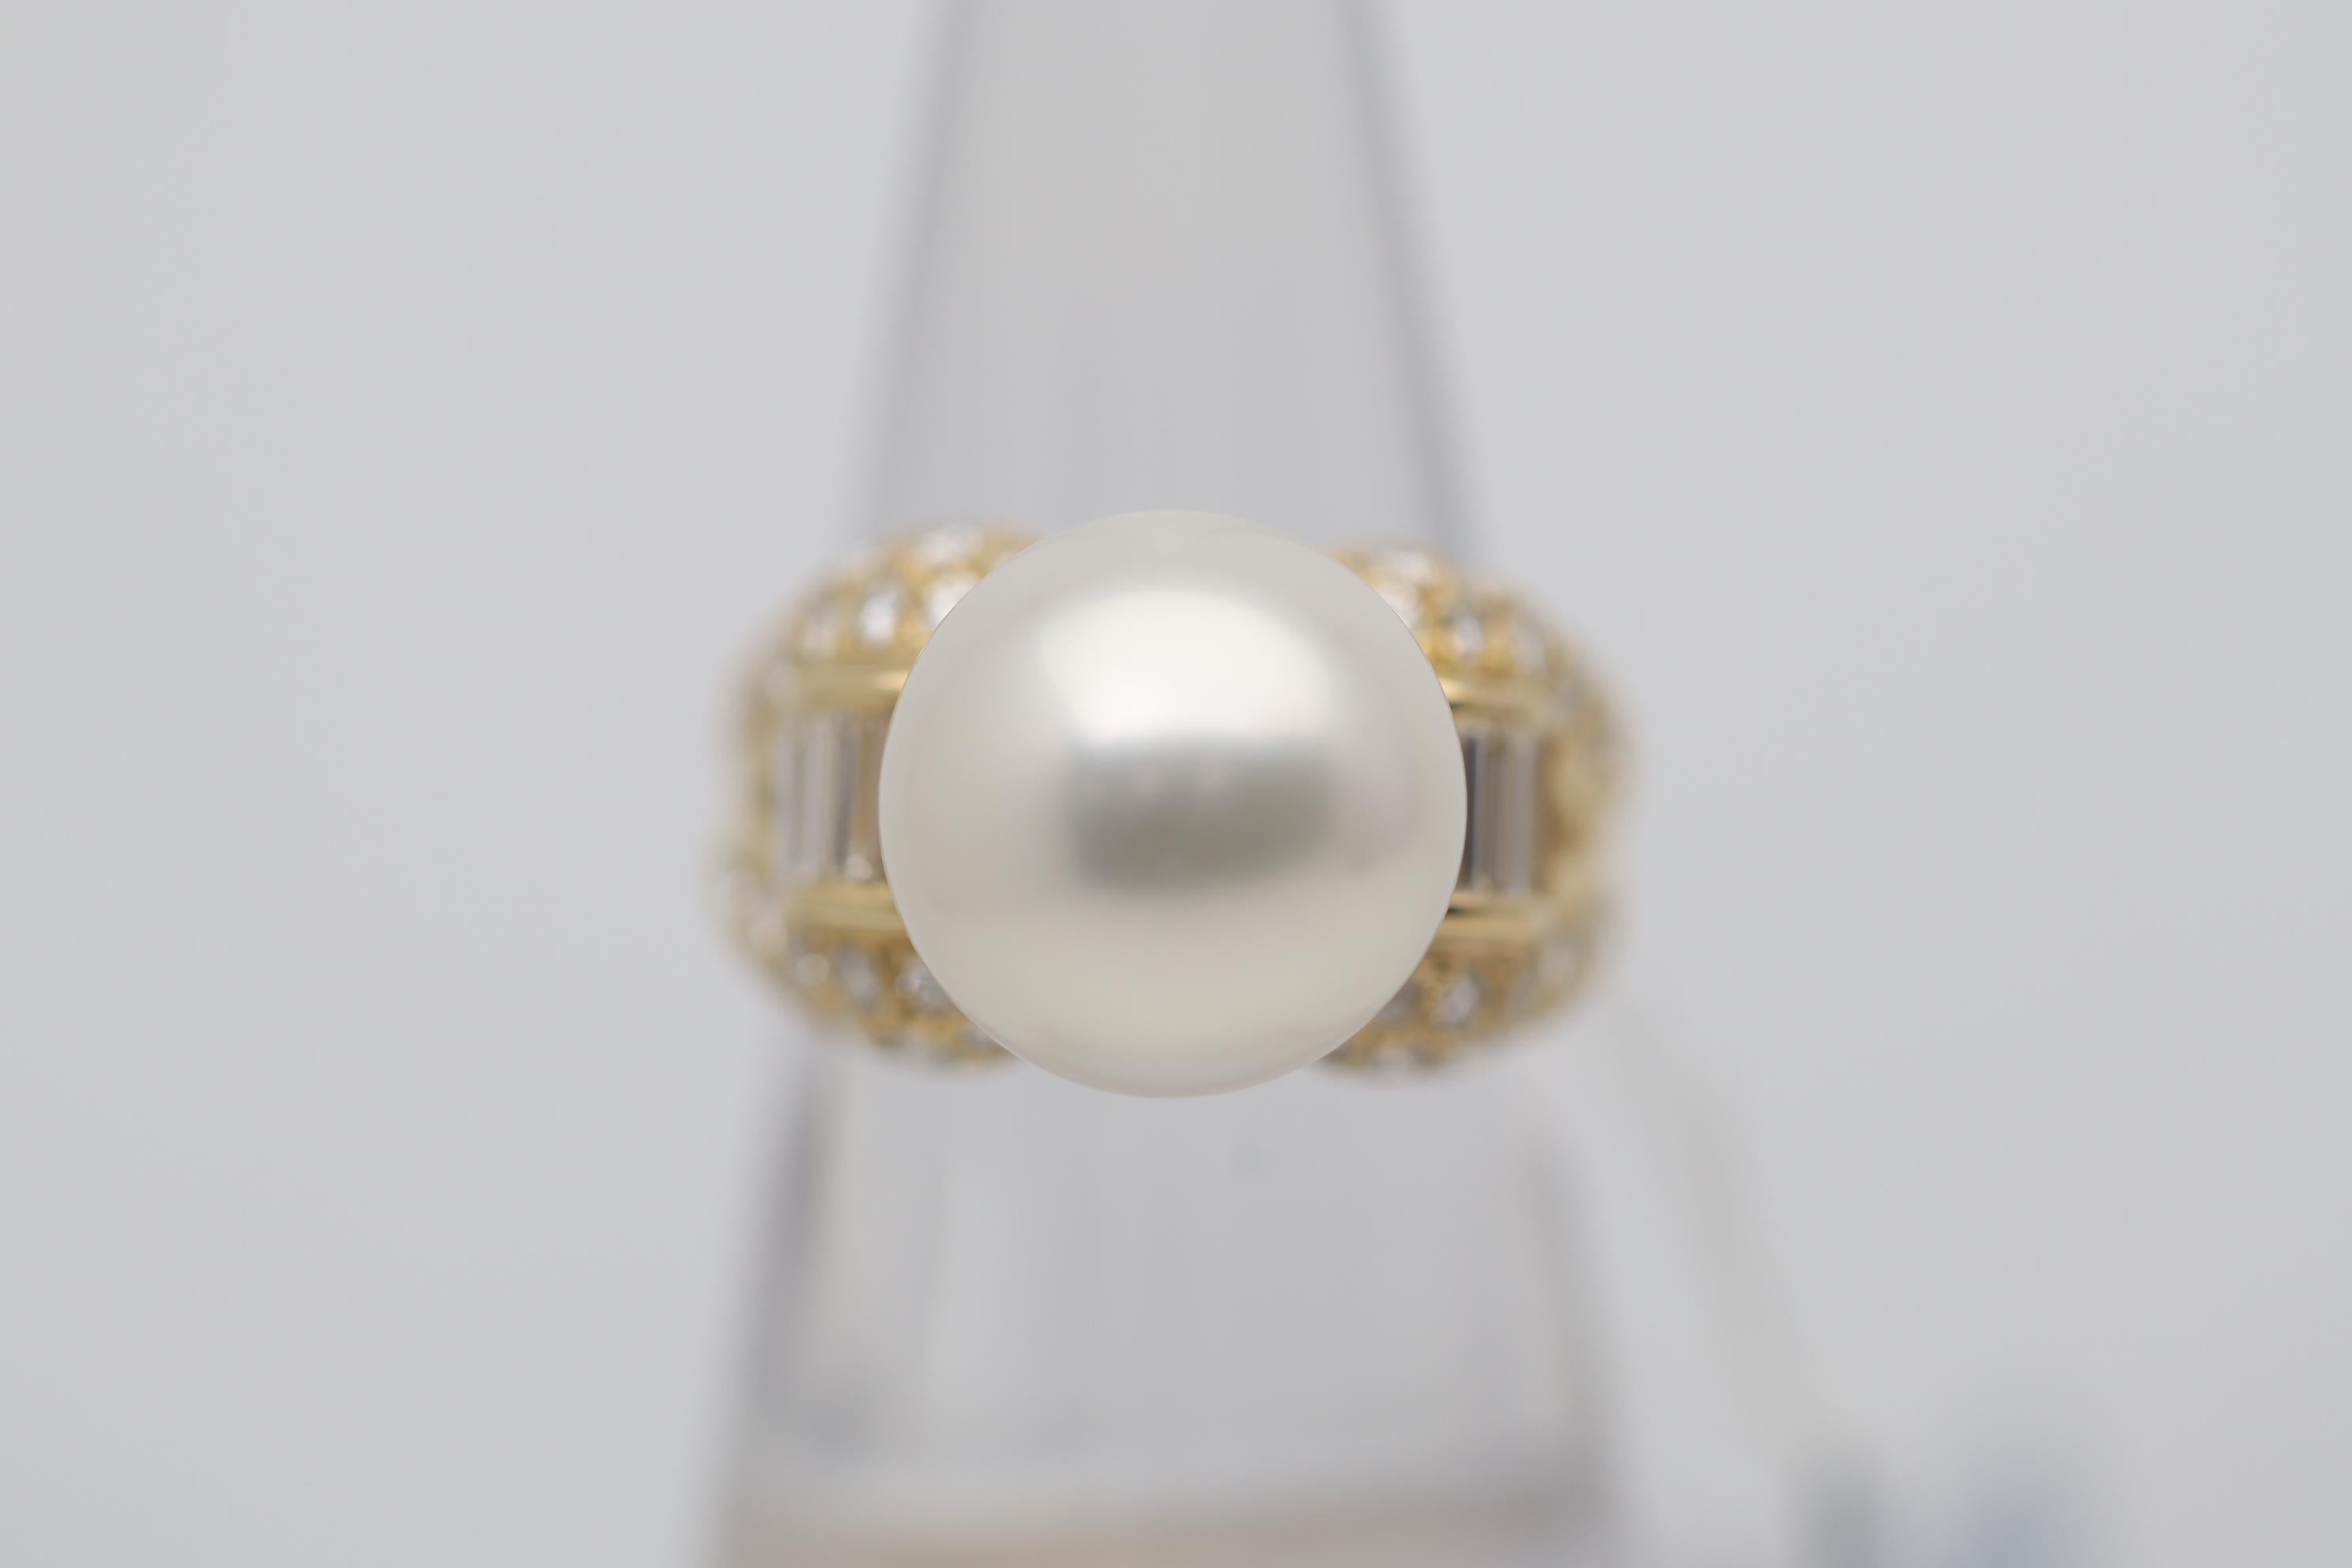 Une jolie perle des mers du Sud occupe le centre de la bague en or jaune 18 carats. Elle mesure 13 mm, est parfaitement arrondie, possède un excellent lustre et une douce nuance de rose. Elle est complétée par 1,42 carats de diamants baguette et